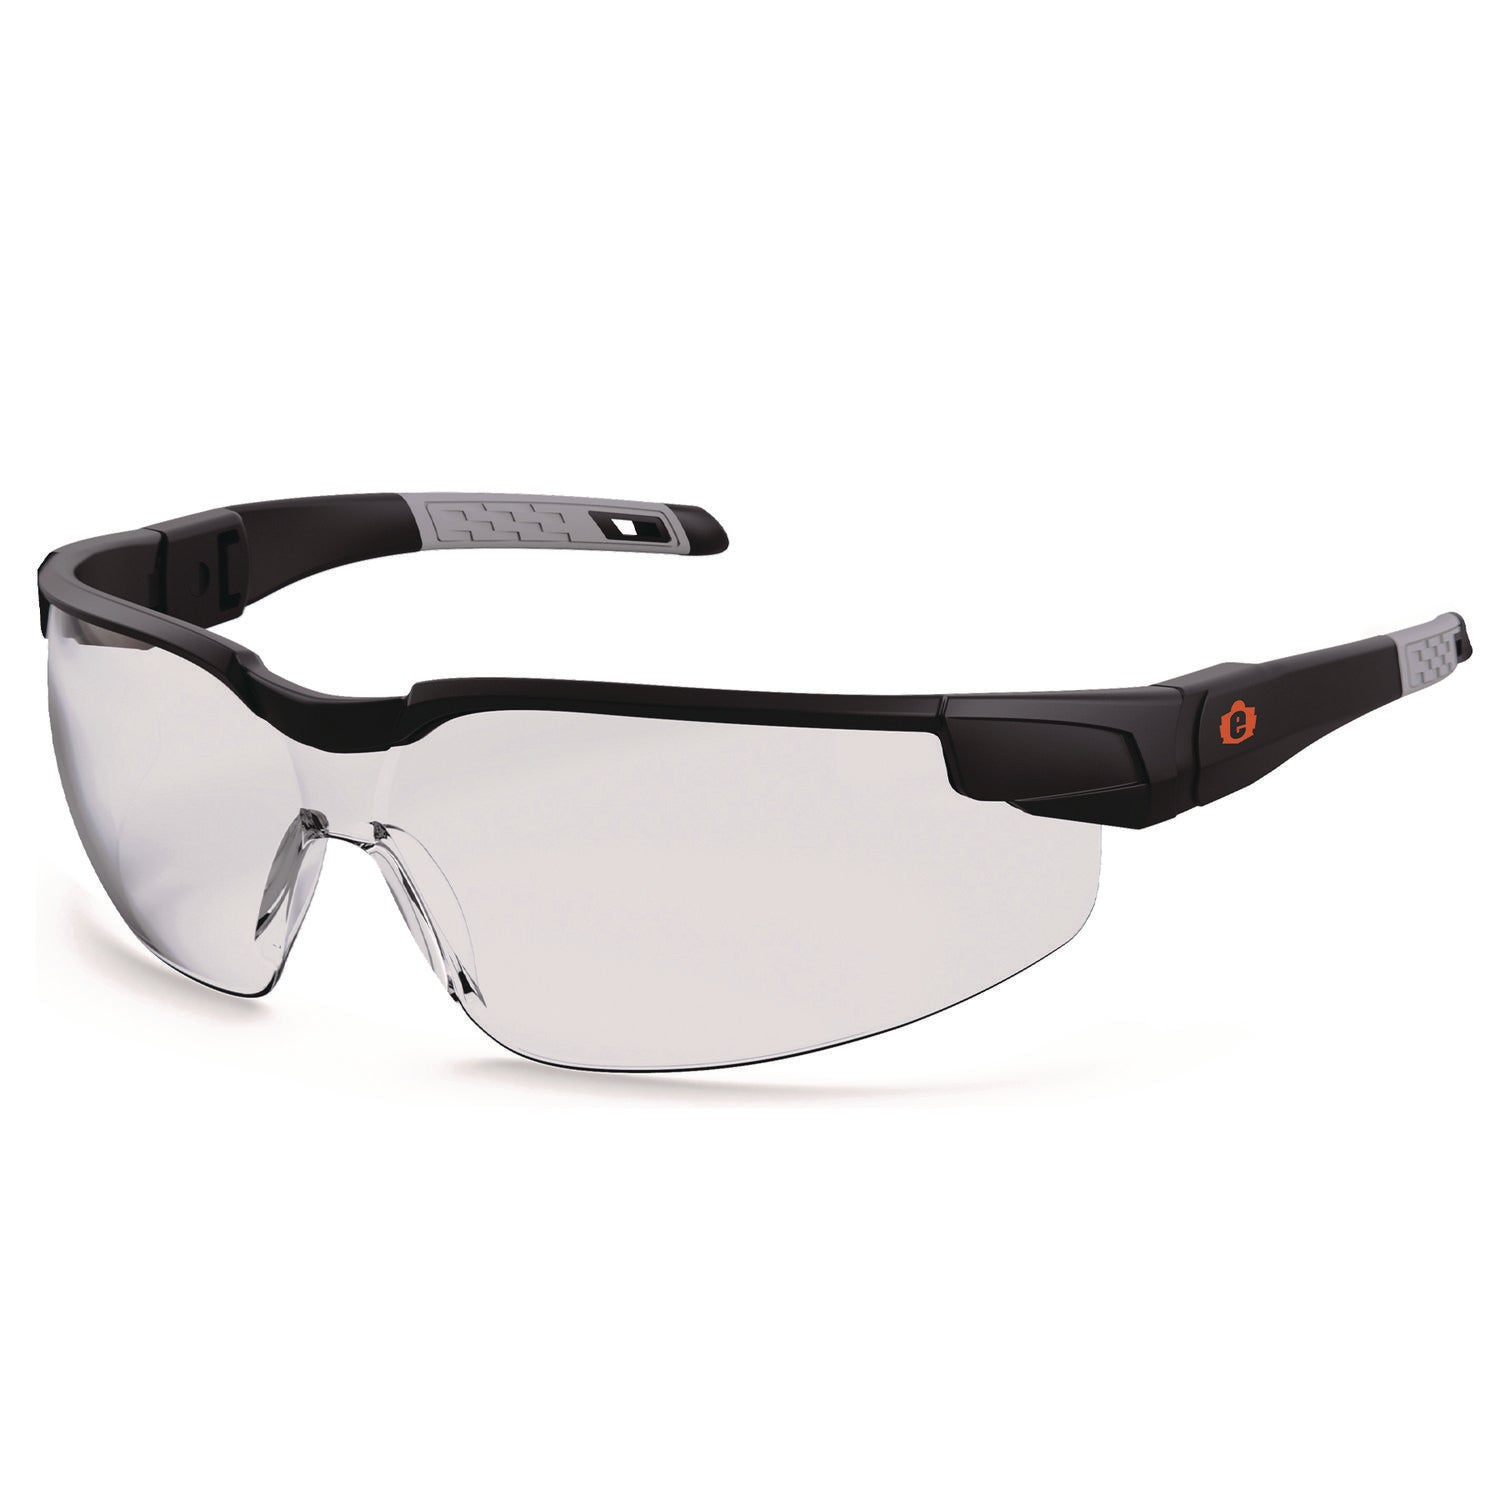 skullerz-dellenger-safety-glasses-with-adjustable-temples-matte-black-frame-clear-polycarbonate-lens-ships-in-1-3-bus-days_ego50060 - 1